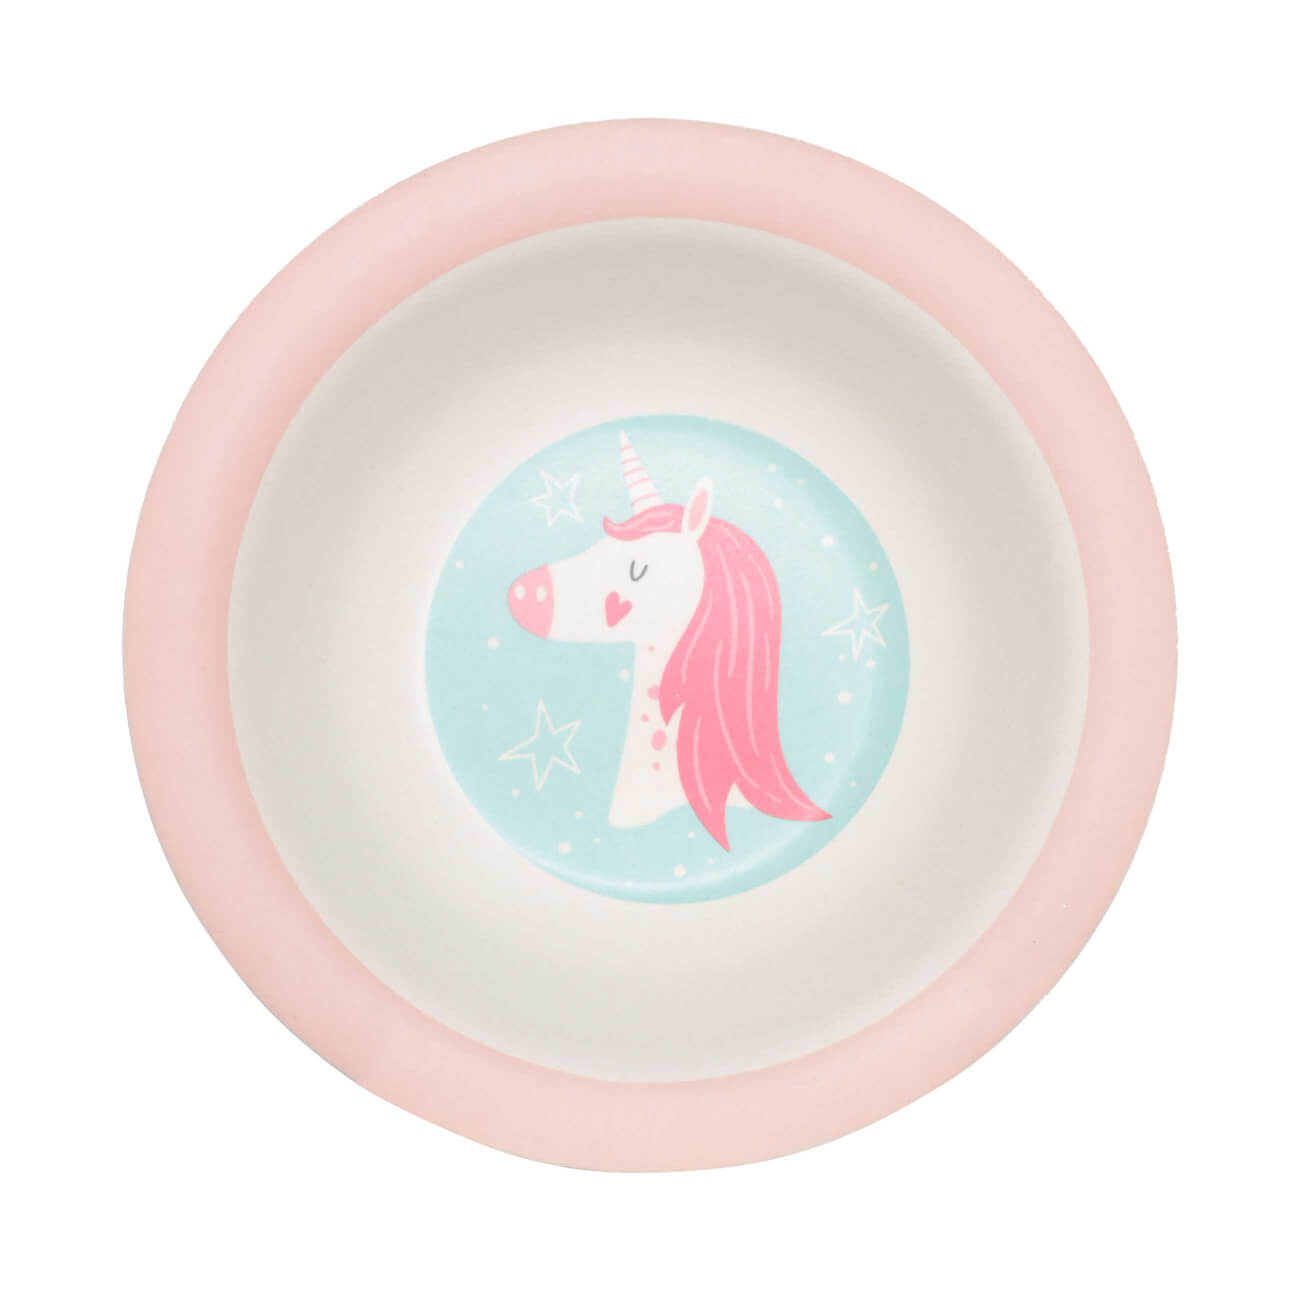 Тарелка суповая, детская, 15 см, бамбук, розово-мятная, Единорог и звезды, Unicorn суповая пластиковая тарелка eurohouse